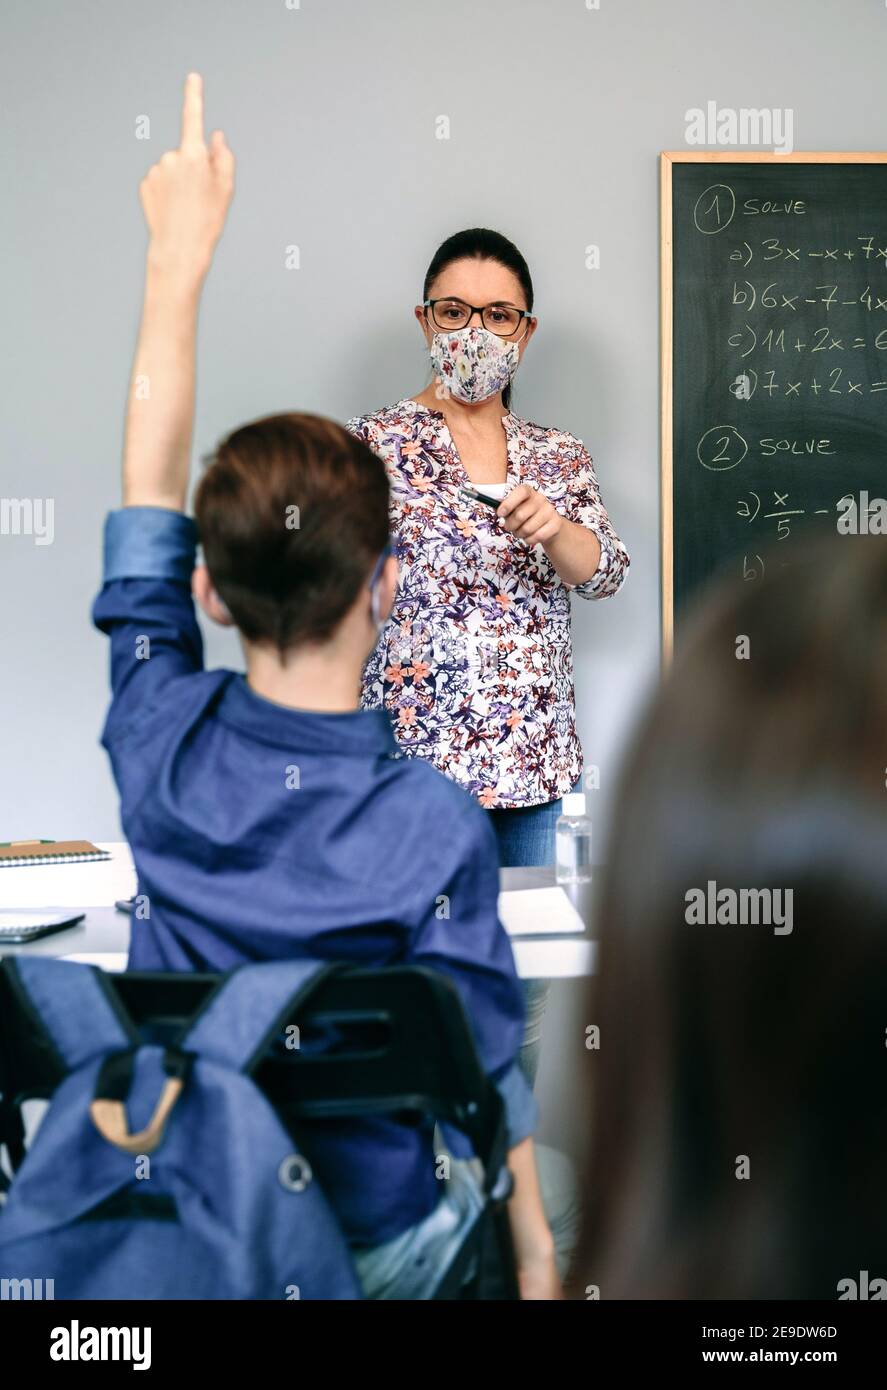 Insegnante con maschera in classe matematica con studente che alza la mano Foto Stock